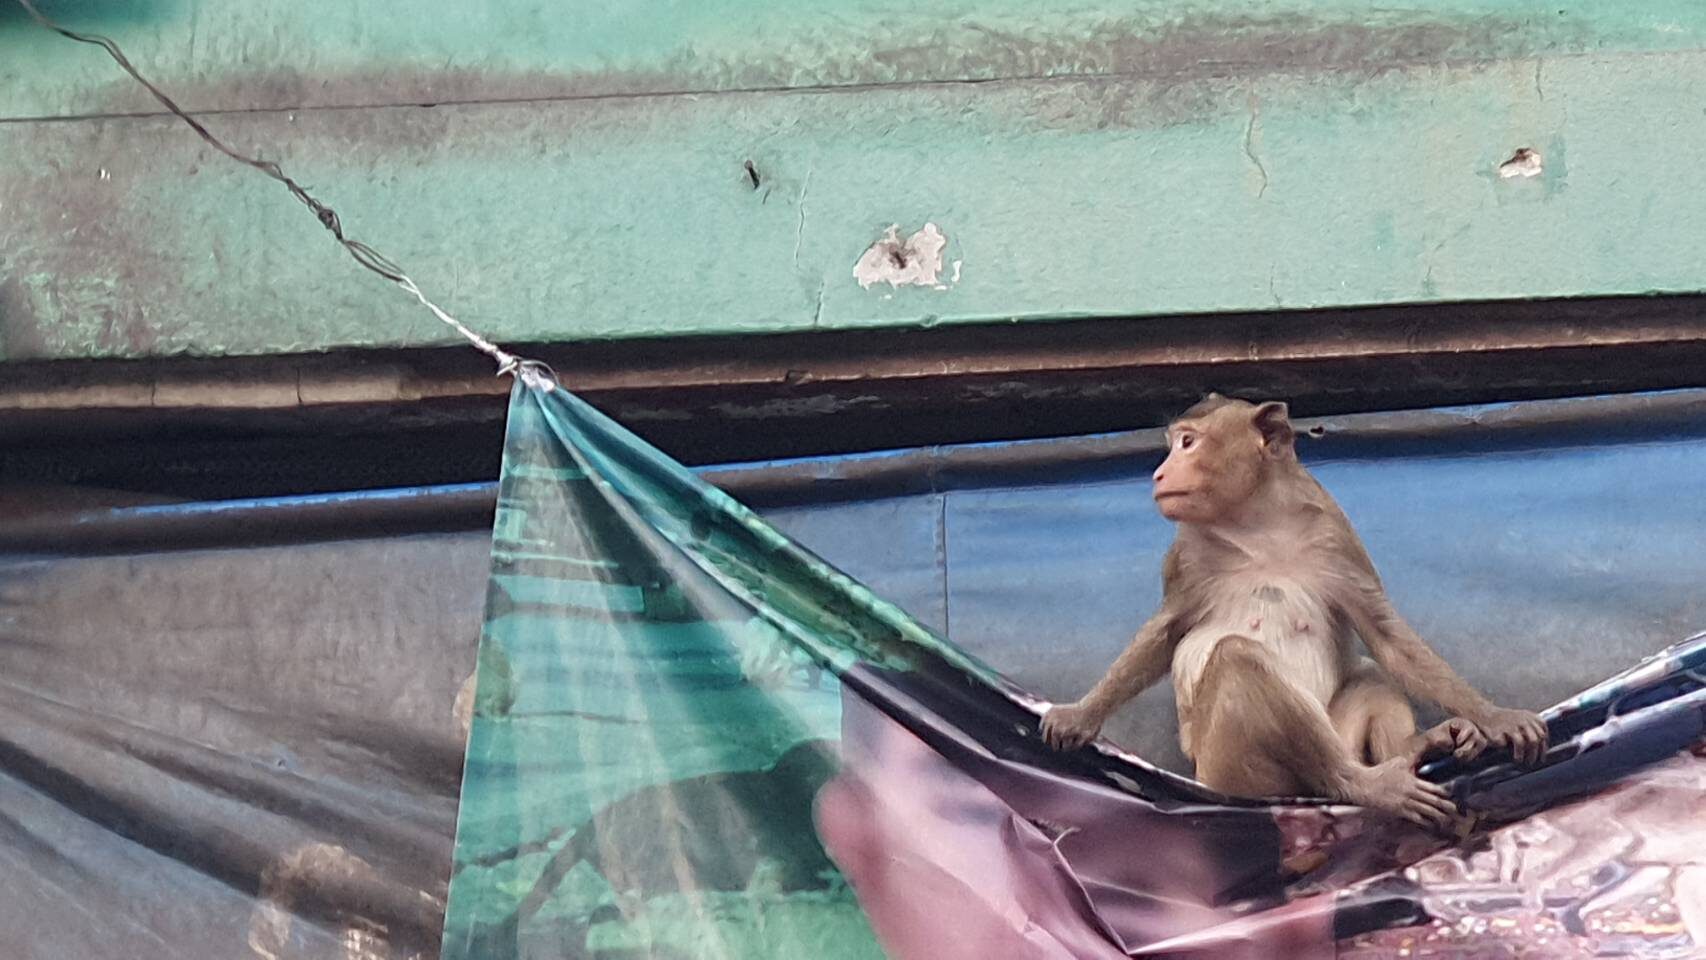 อุทยานฯ เข้าใจชาวบ้านด่า ไม่แก้ปัญหา 'ลิง' ขอใจเย็นๆ รอกรงใหญ่เสร็จ จับลิงไม่ใช่เรื่องยาก